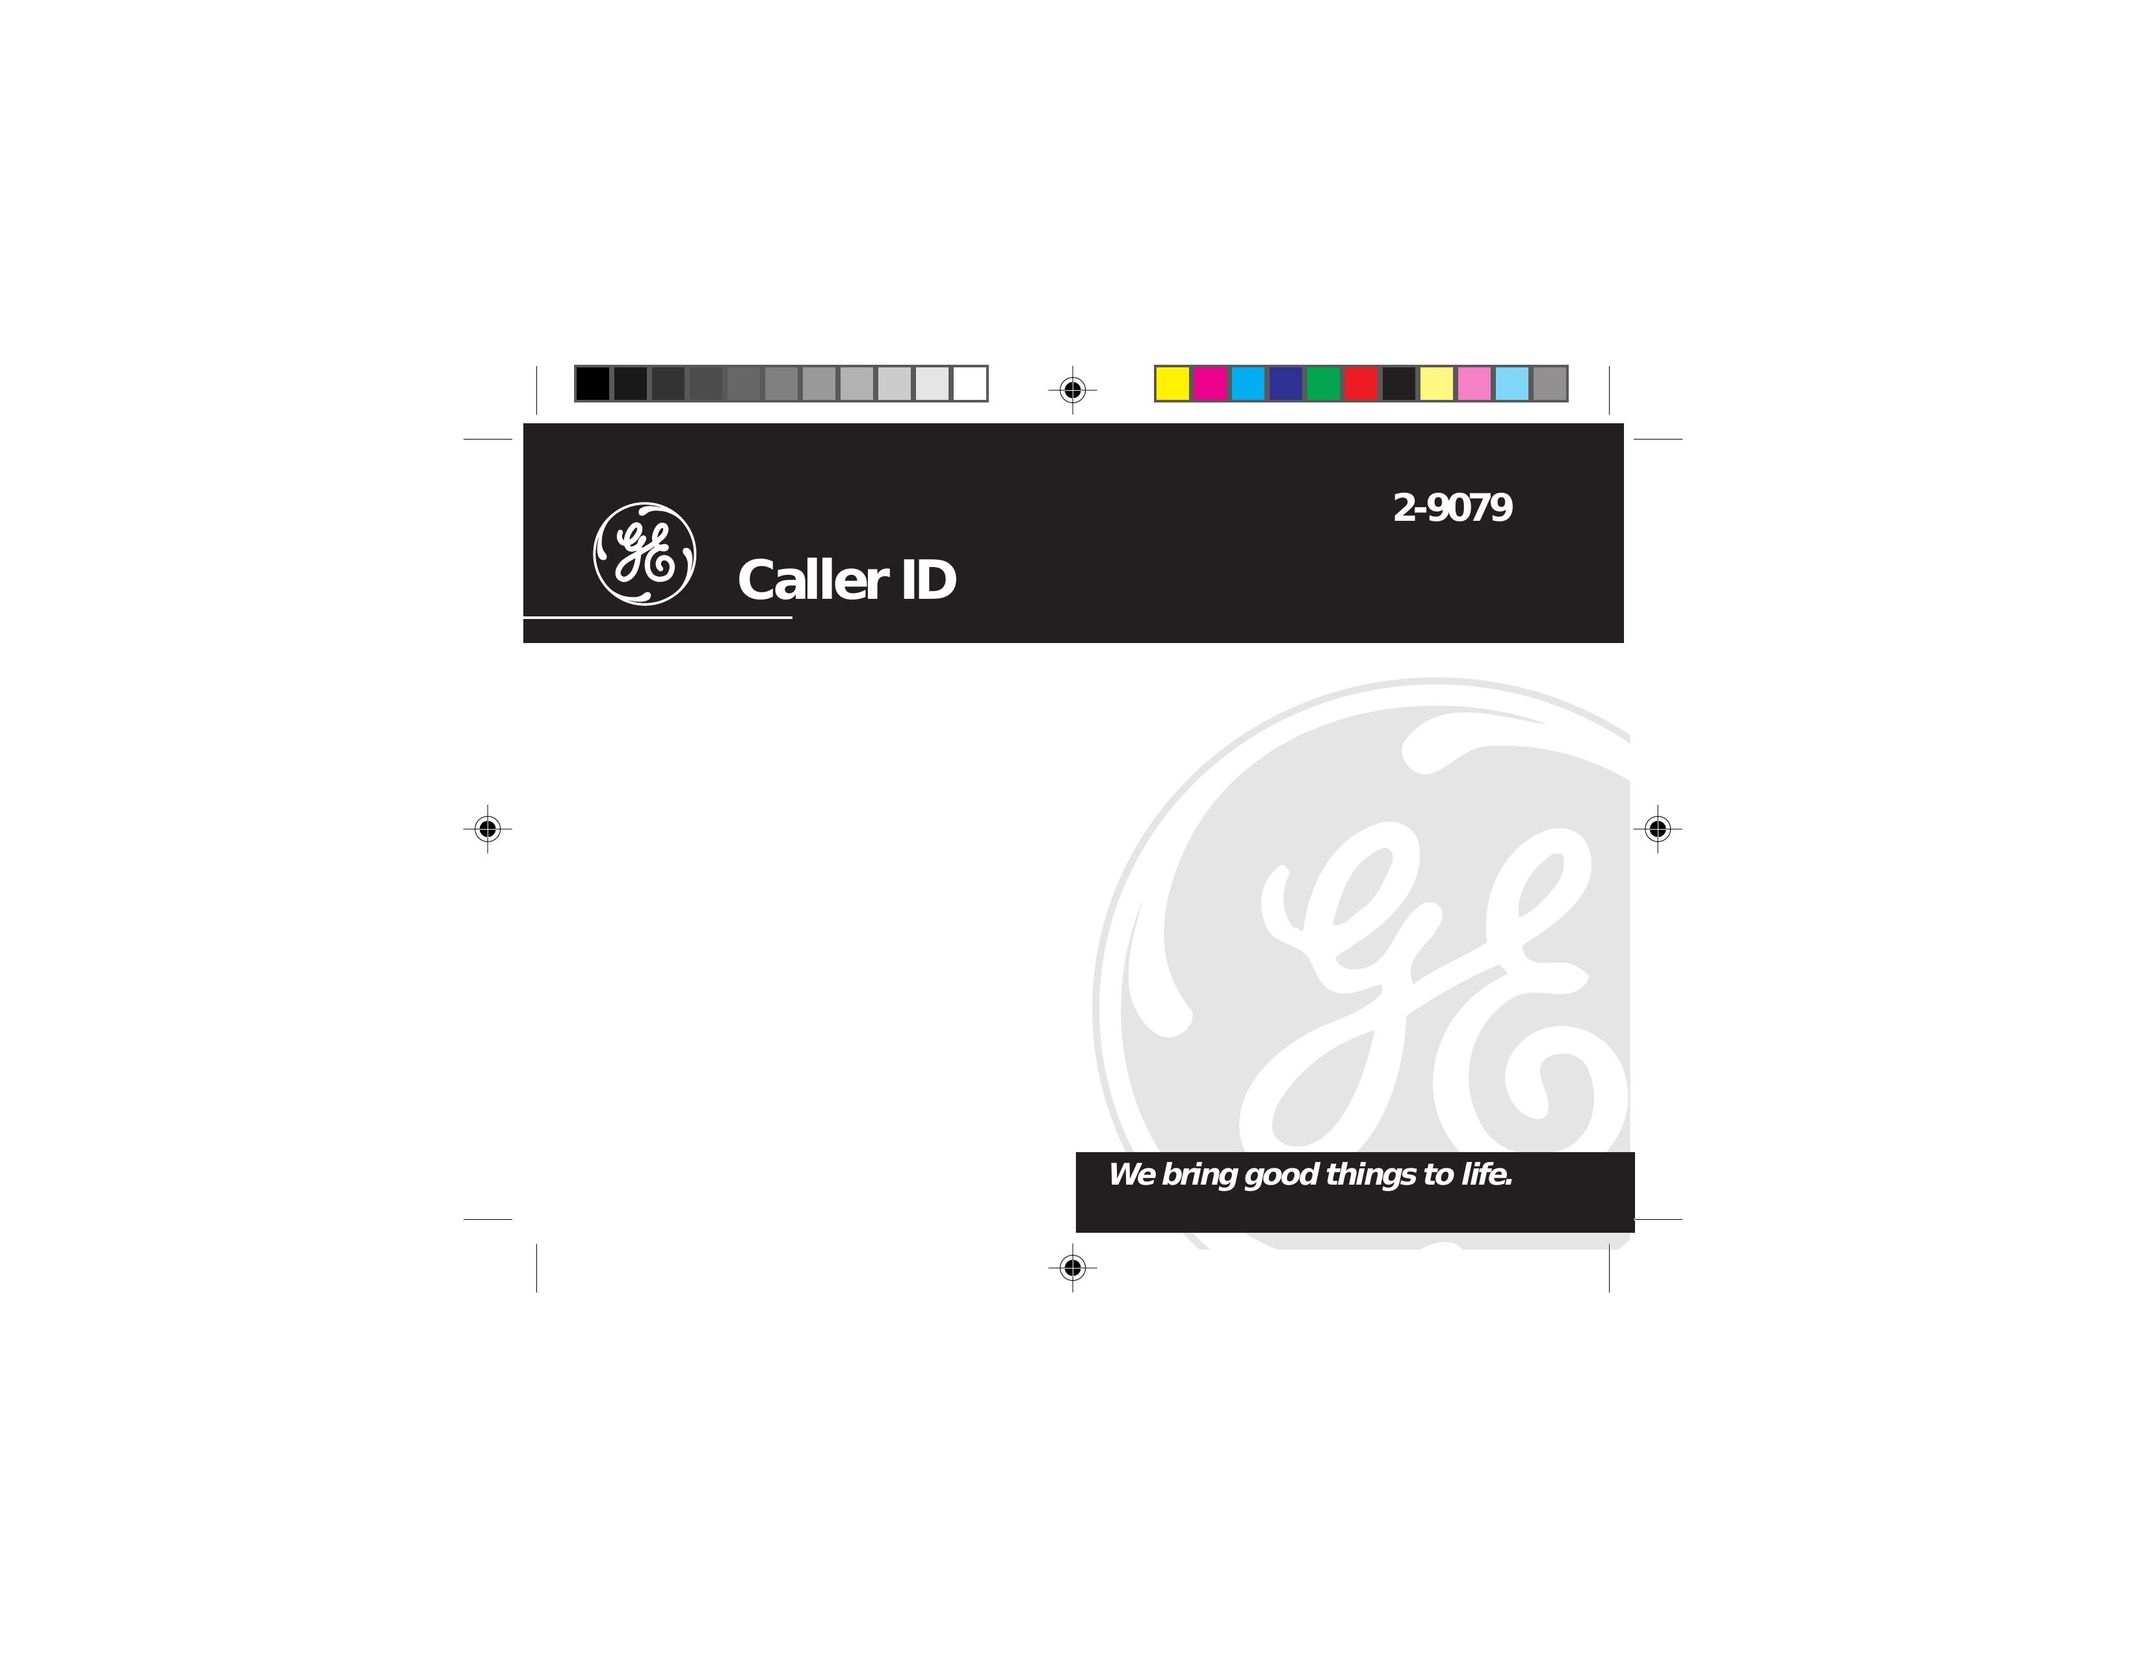 GE 2-9079 Caller ID Box User Manual